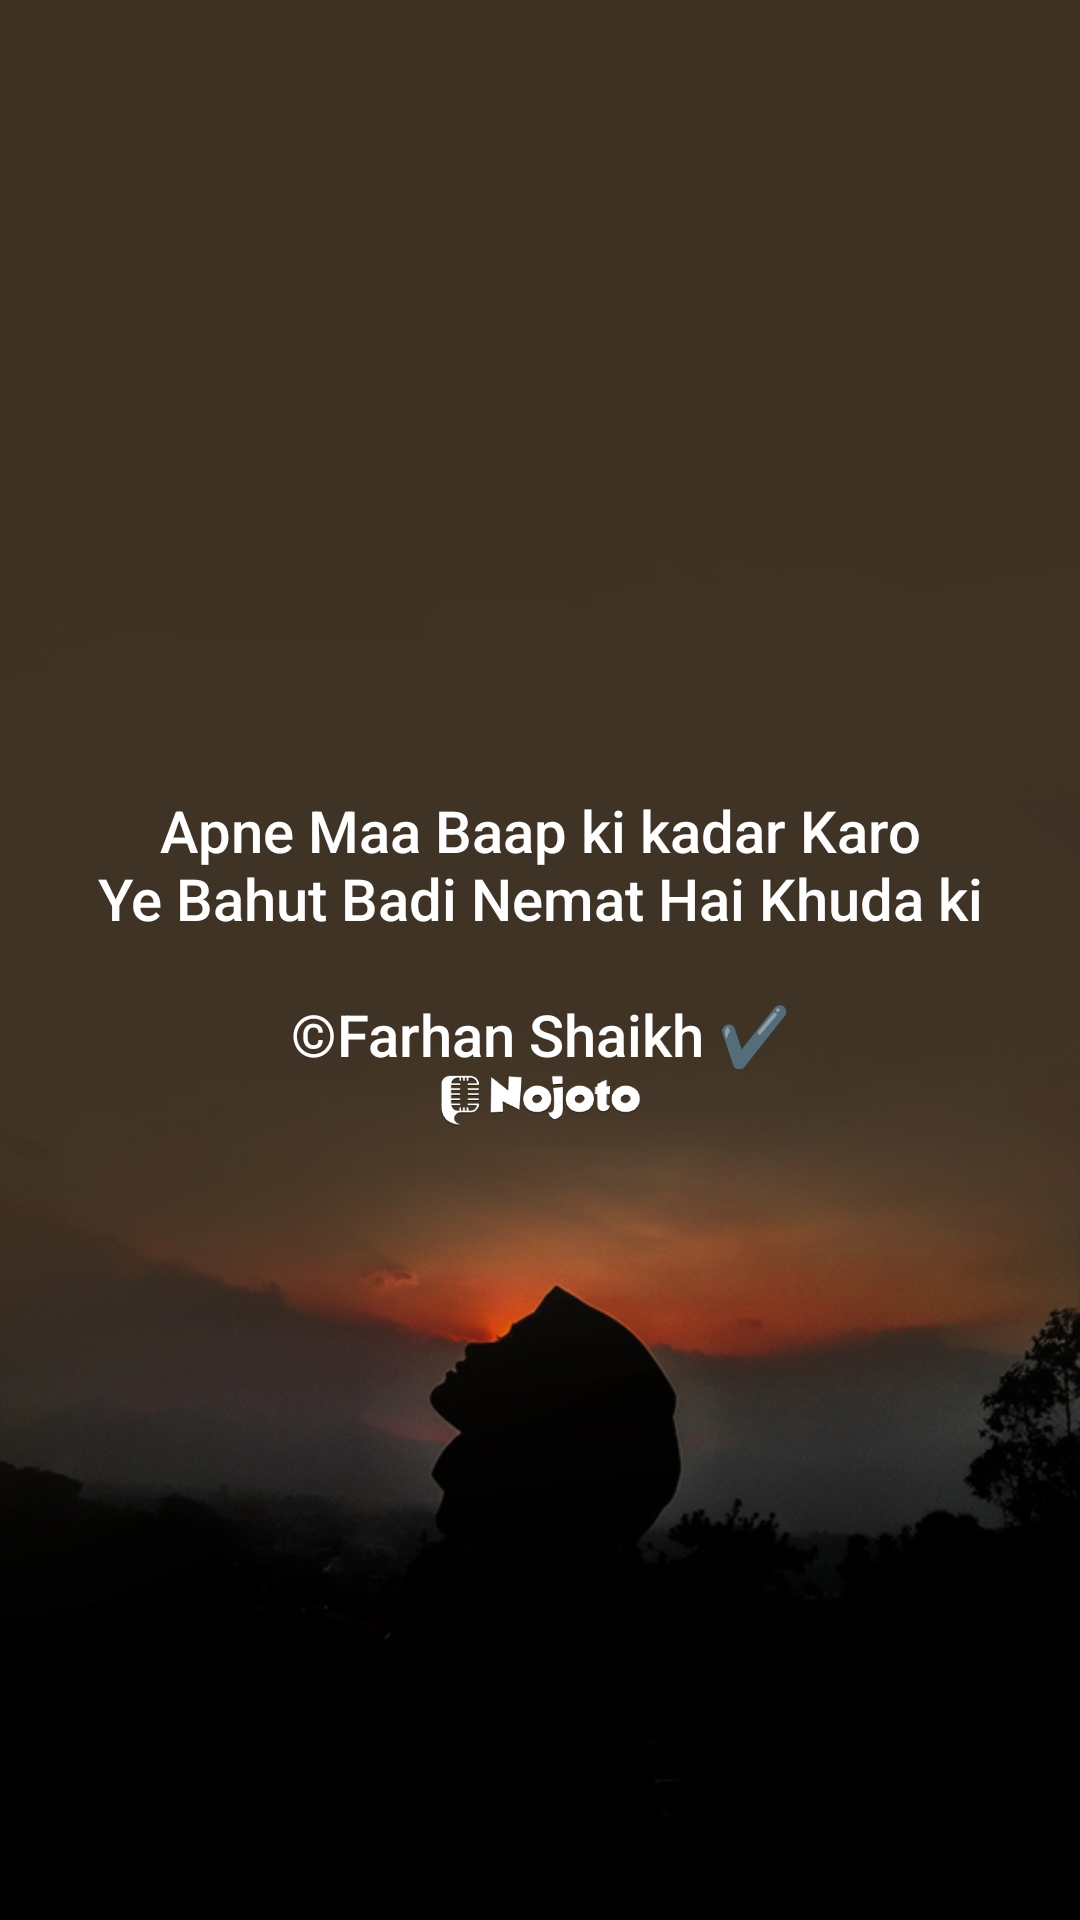 #maa #baap #farhan_1998 NIKHAT دل سے درد کا رشتہ  Arfin Parwin Arfa Ayesha Aarya Singh  

#merimaa